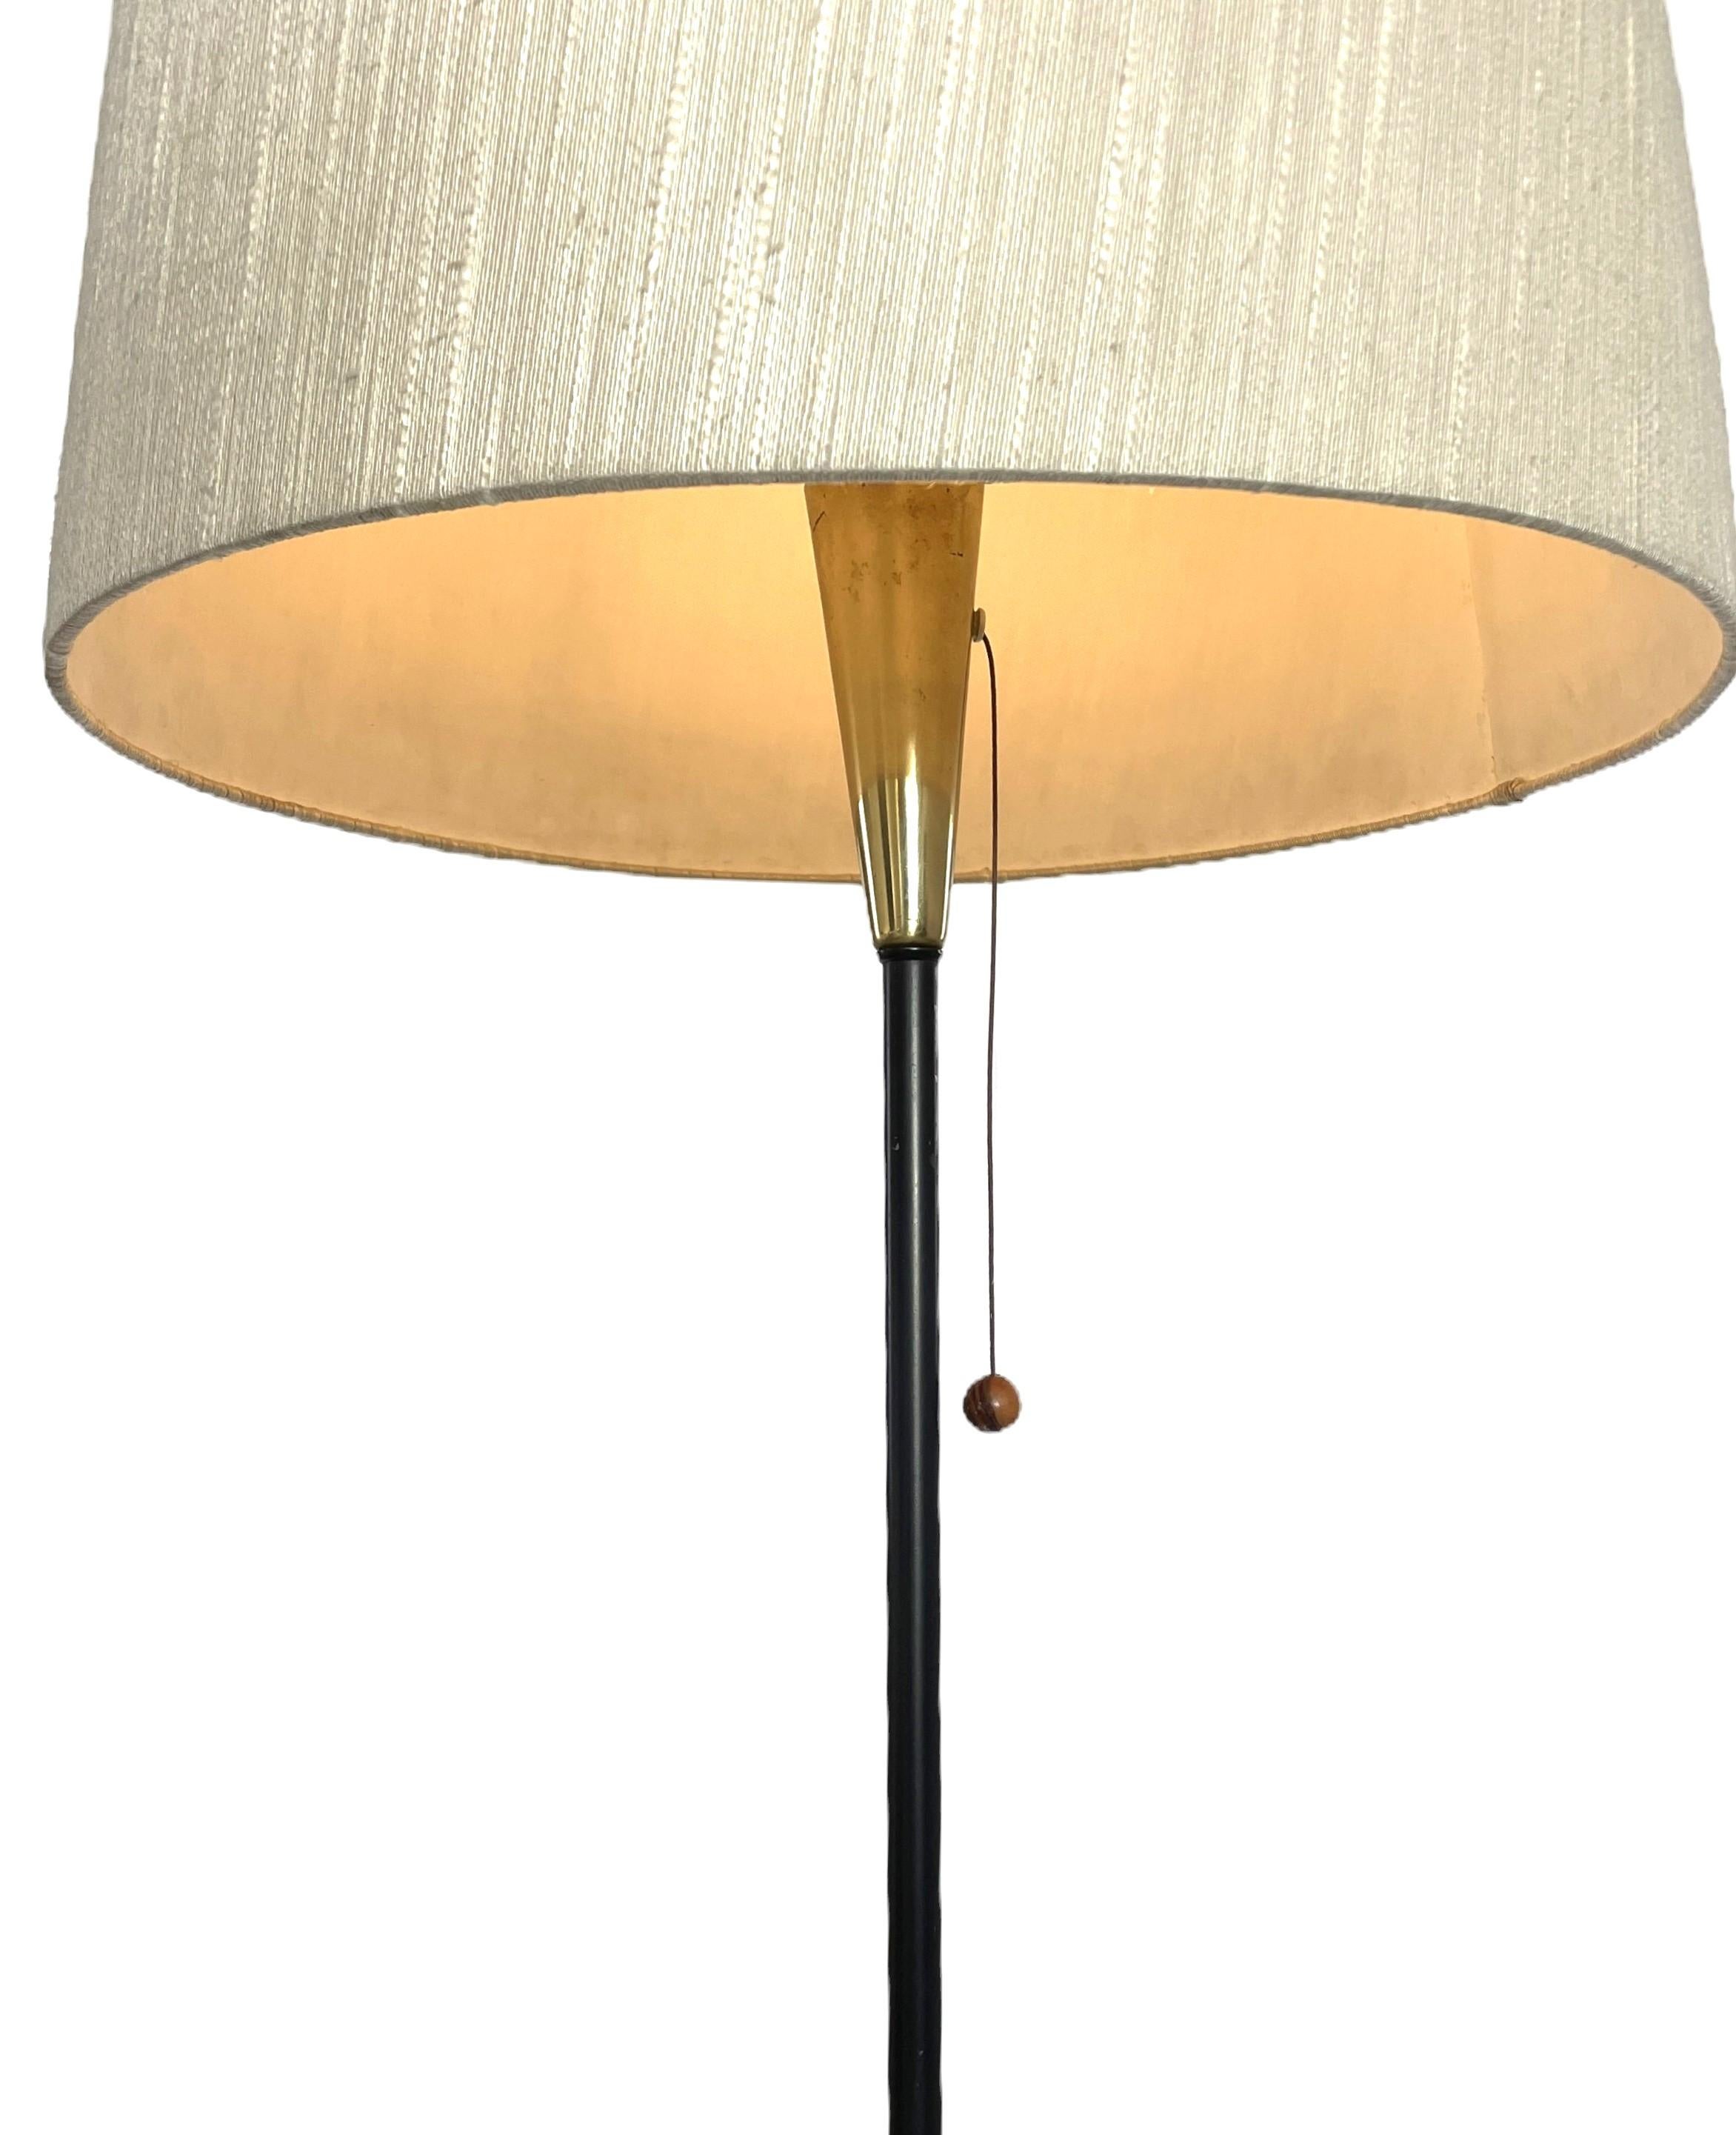 Die von Maria Lindeman in den 1950er Jahren für Idman in Finnland entworfene Stehlampe repräsentiert die finnische Moderne der Jahrhundertmitte in ihrer besten Form. Lindemans meisterhafte Handschrift zeigt sich in diesem Stück, in dem Modernität